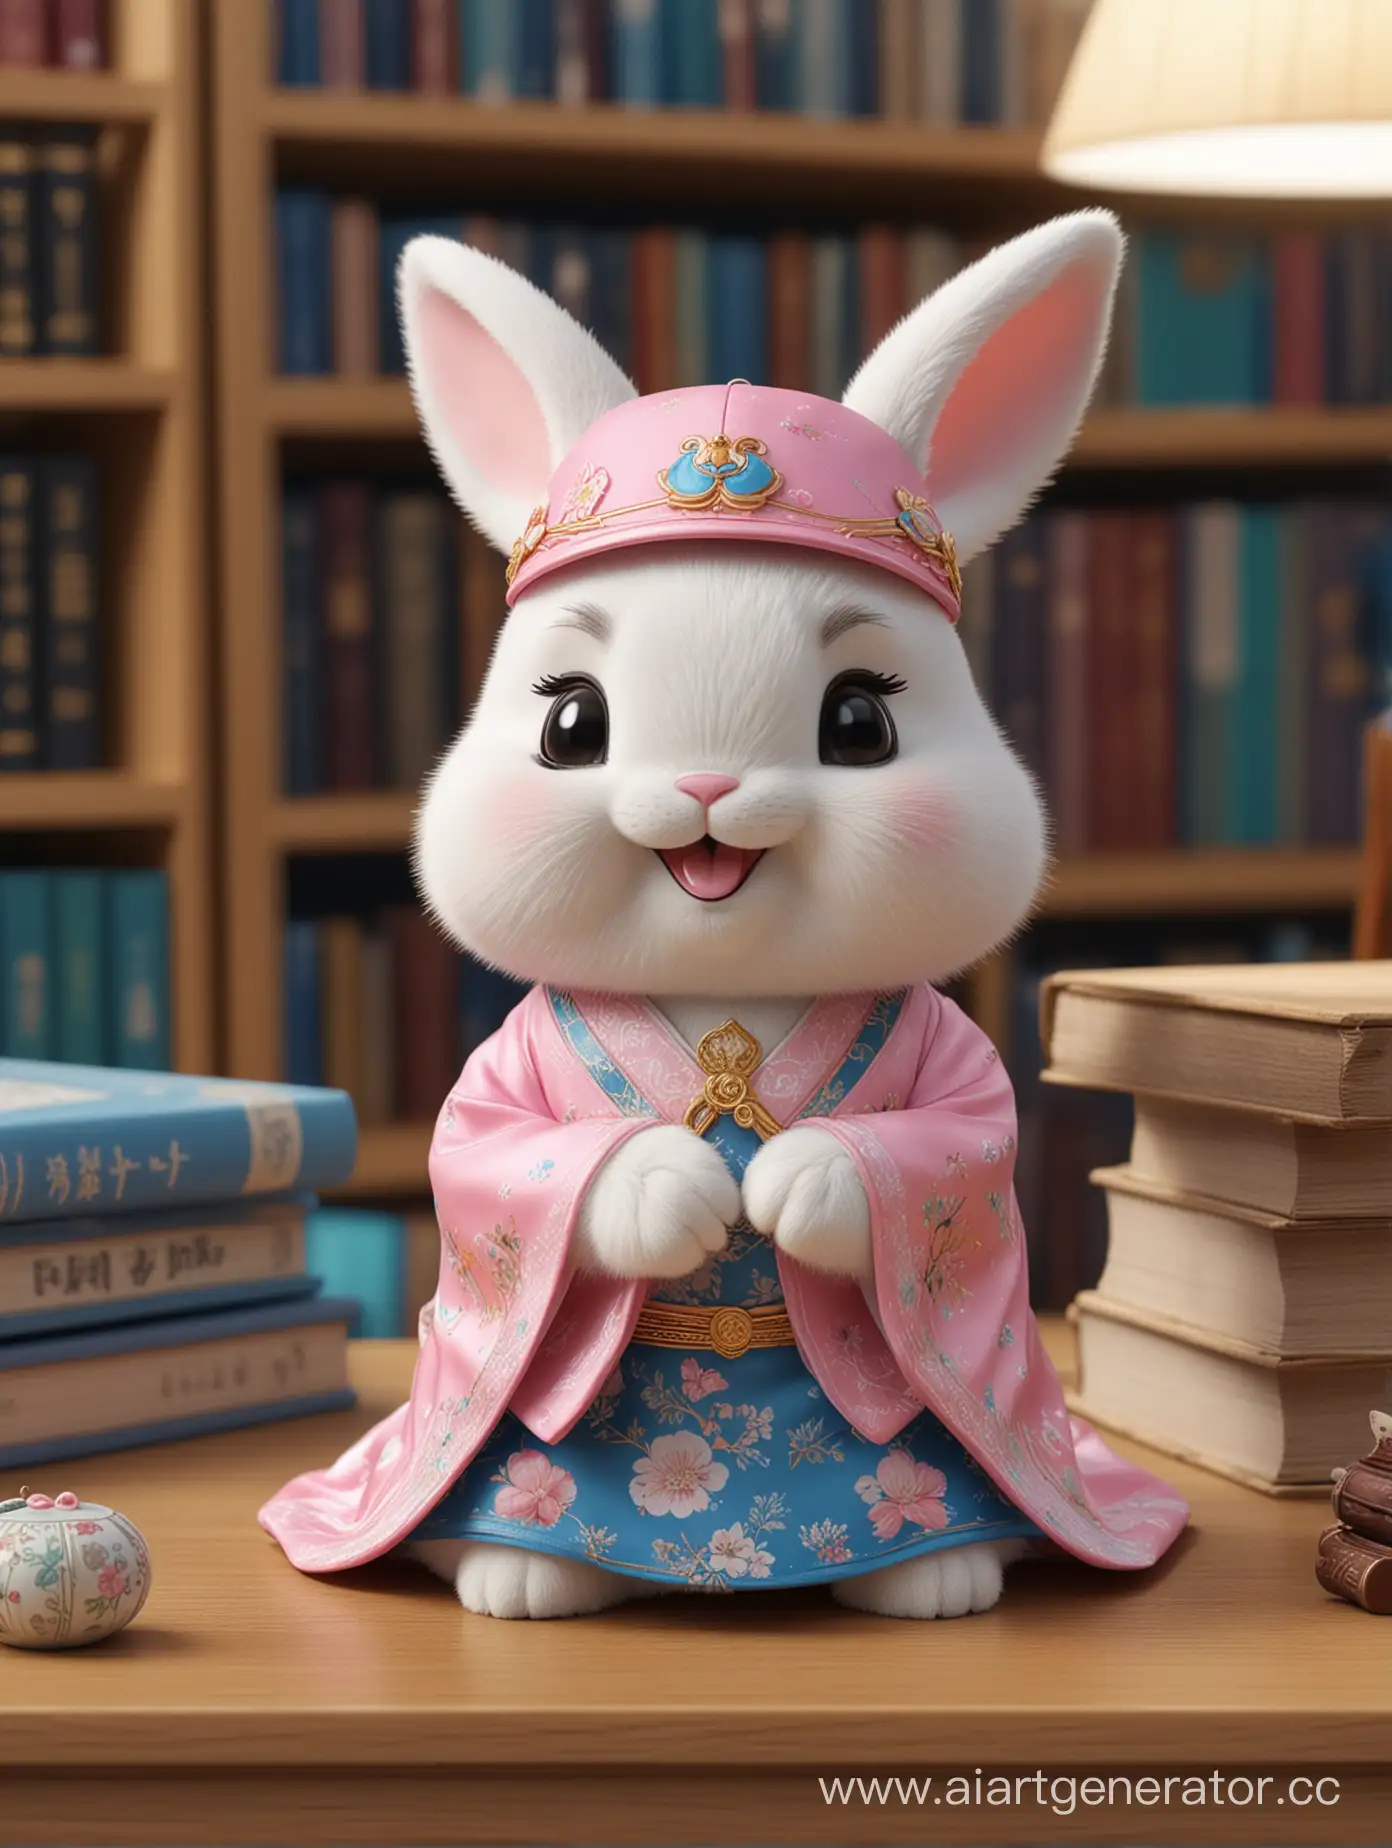 超萌的兔子IP 在书桌前认真看书 带着兔耳朵造型的帽子 可爱的表情 开心的微笑 穿着粉蓝色中国汉服 图书馆场景 盲盒玩具 手办 精美的 3D 效果 全身展示超高精度 超高细节的 完美的灯光 OC 渲染器 Blender 8k超清晰超降噪 --ar 1400:1850